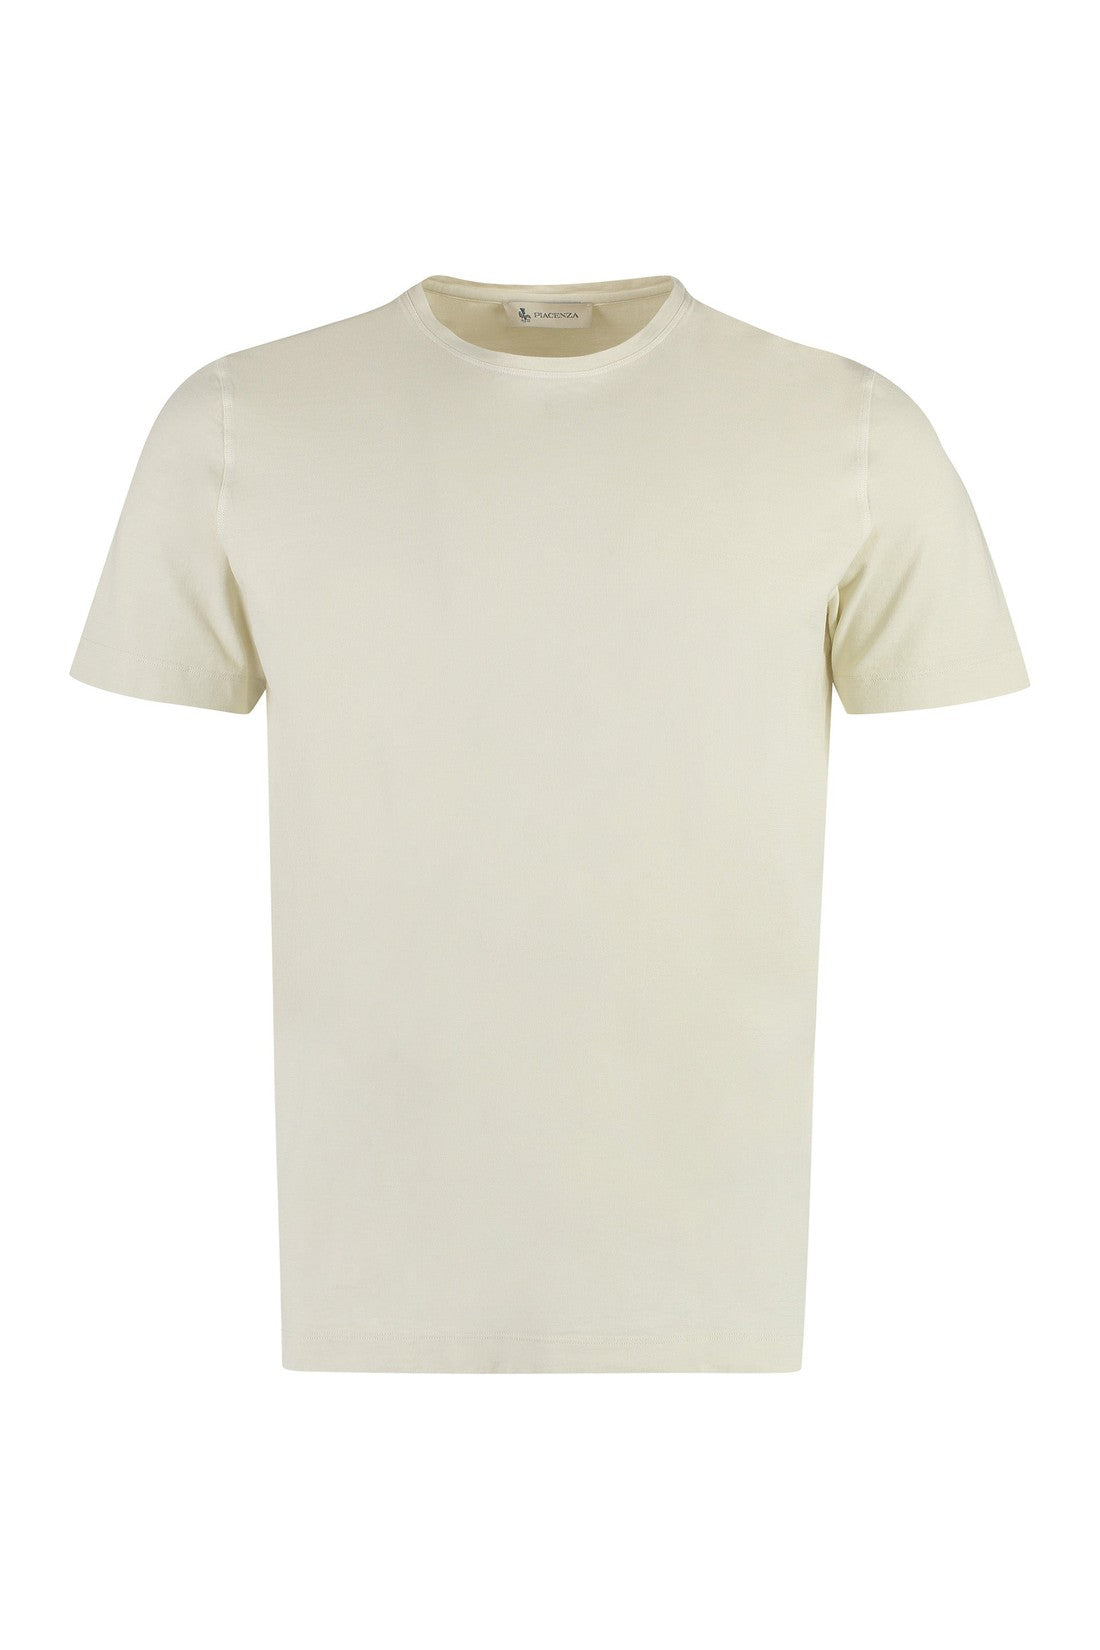 Piralo-OUTLET-SALE-Cotton crew-neck T-shirt-ARCHIVIST